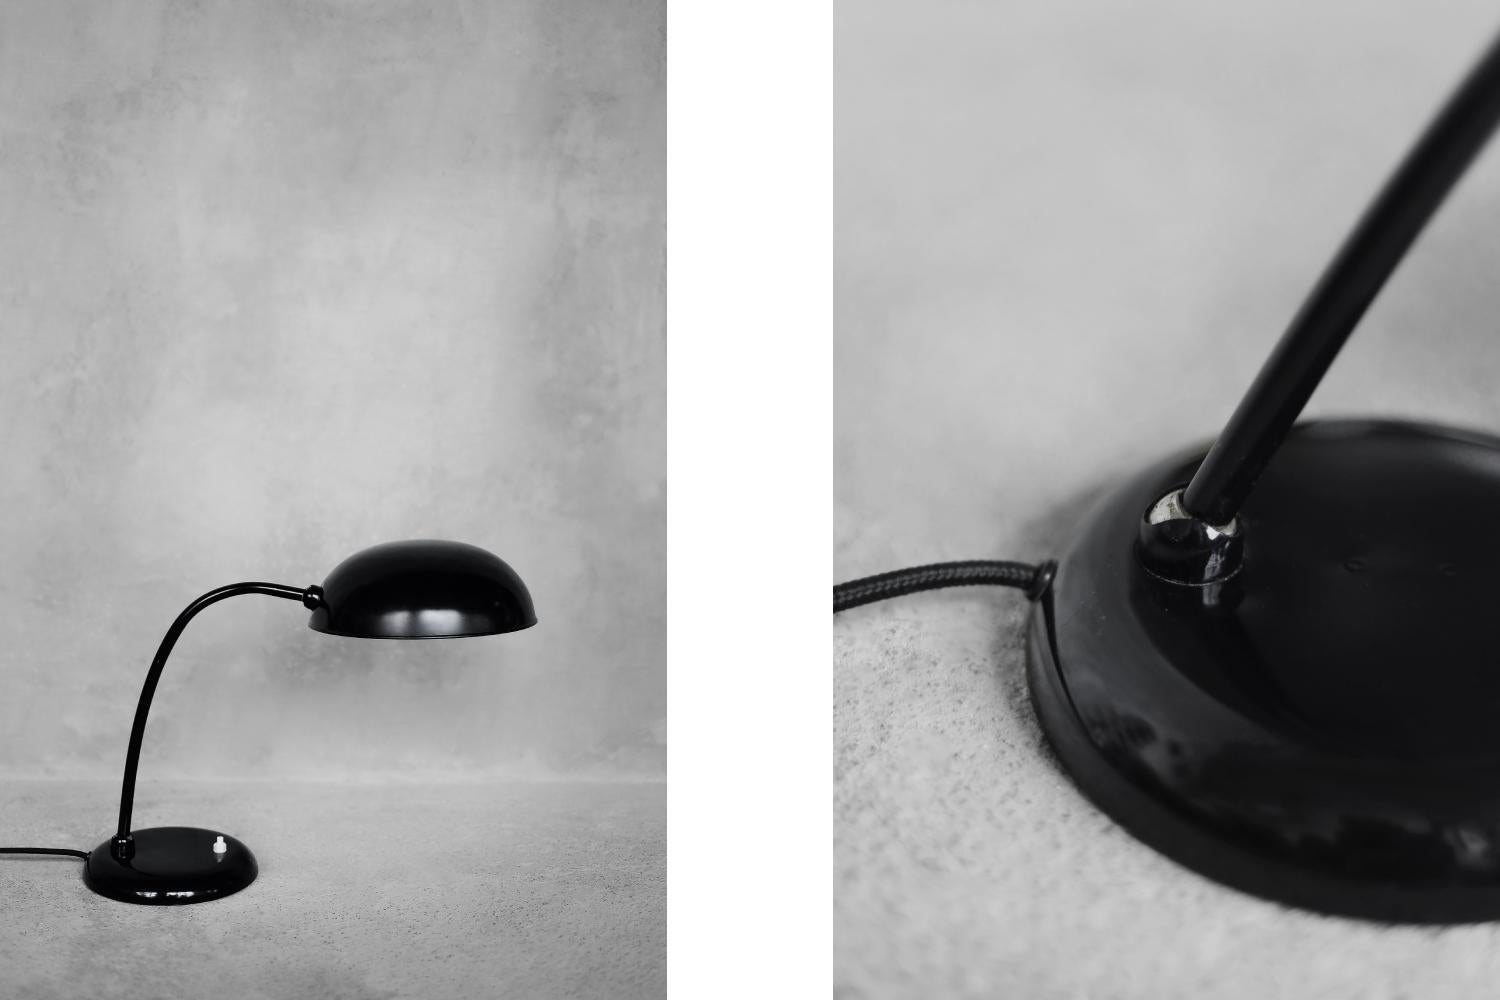 Cette lampe de table classique a été produite par la manufacture allemande Gebrüder Cosack (Gecos) dans les années 1940. Également connue sous le nom de lampe de médecin. La base est en fonte, l'abat-jour et le bras articulé sont en métal. Le bras